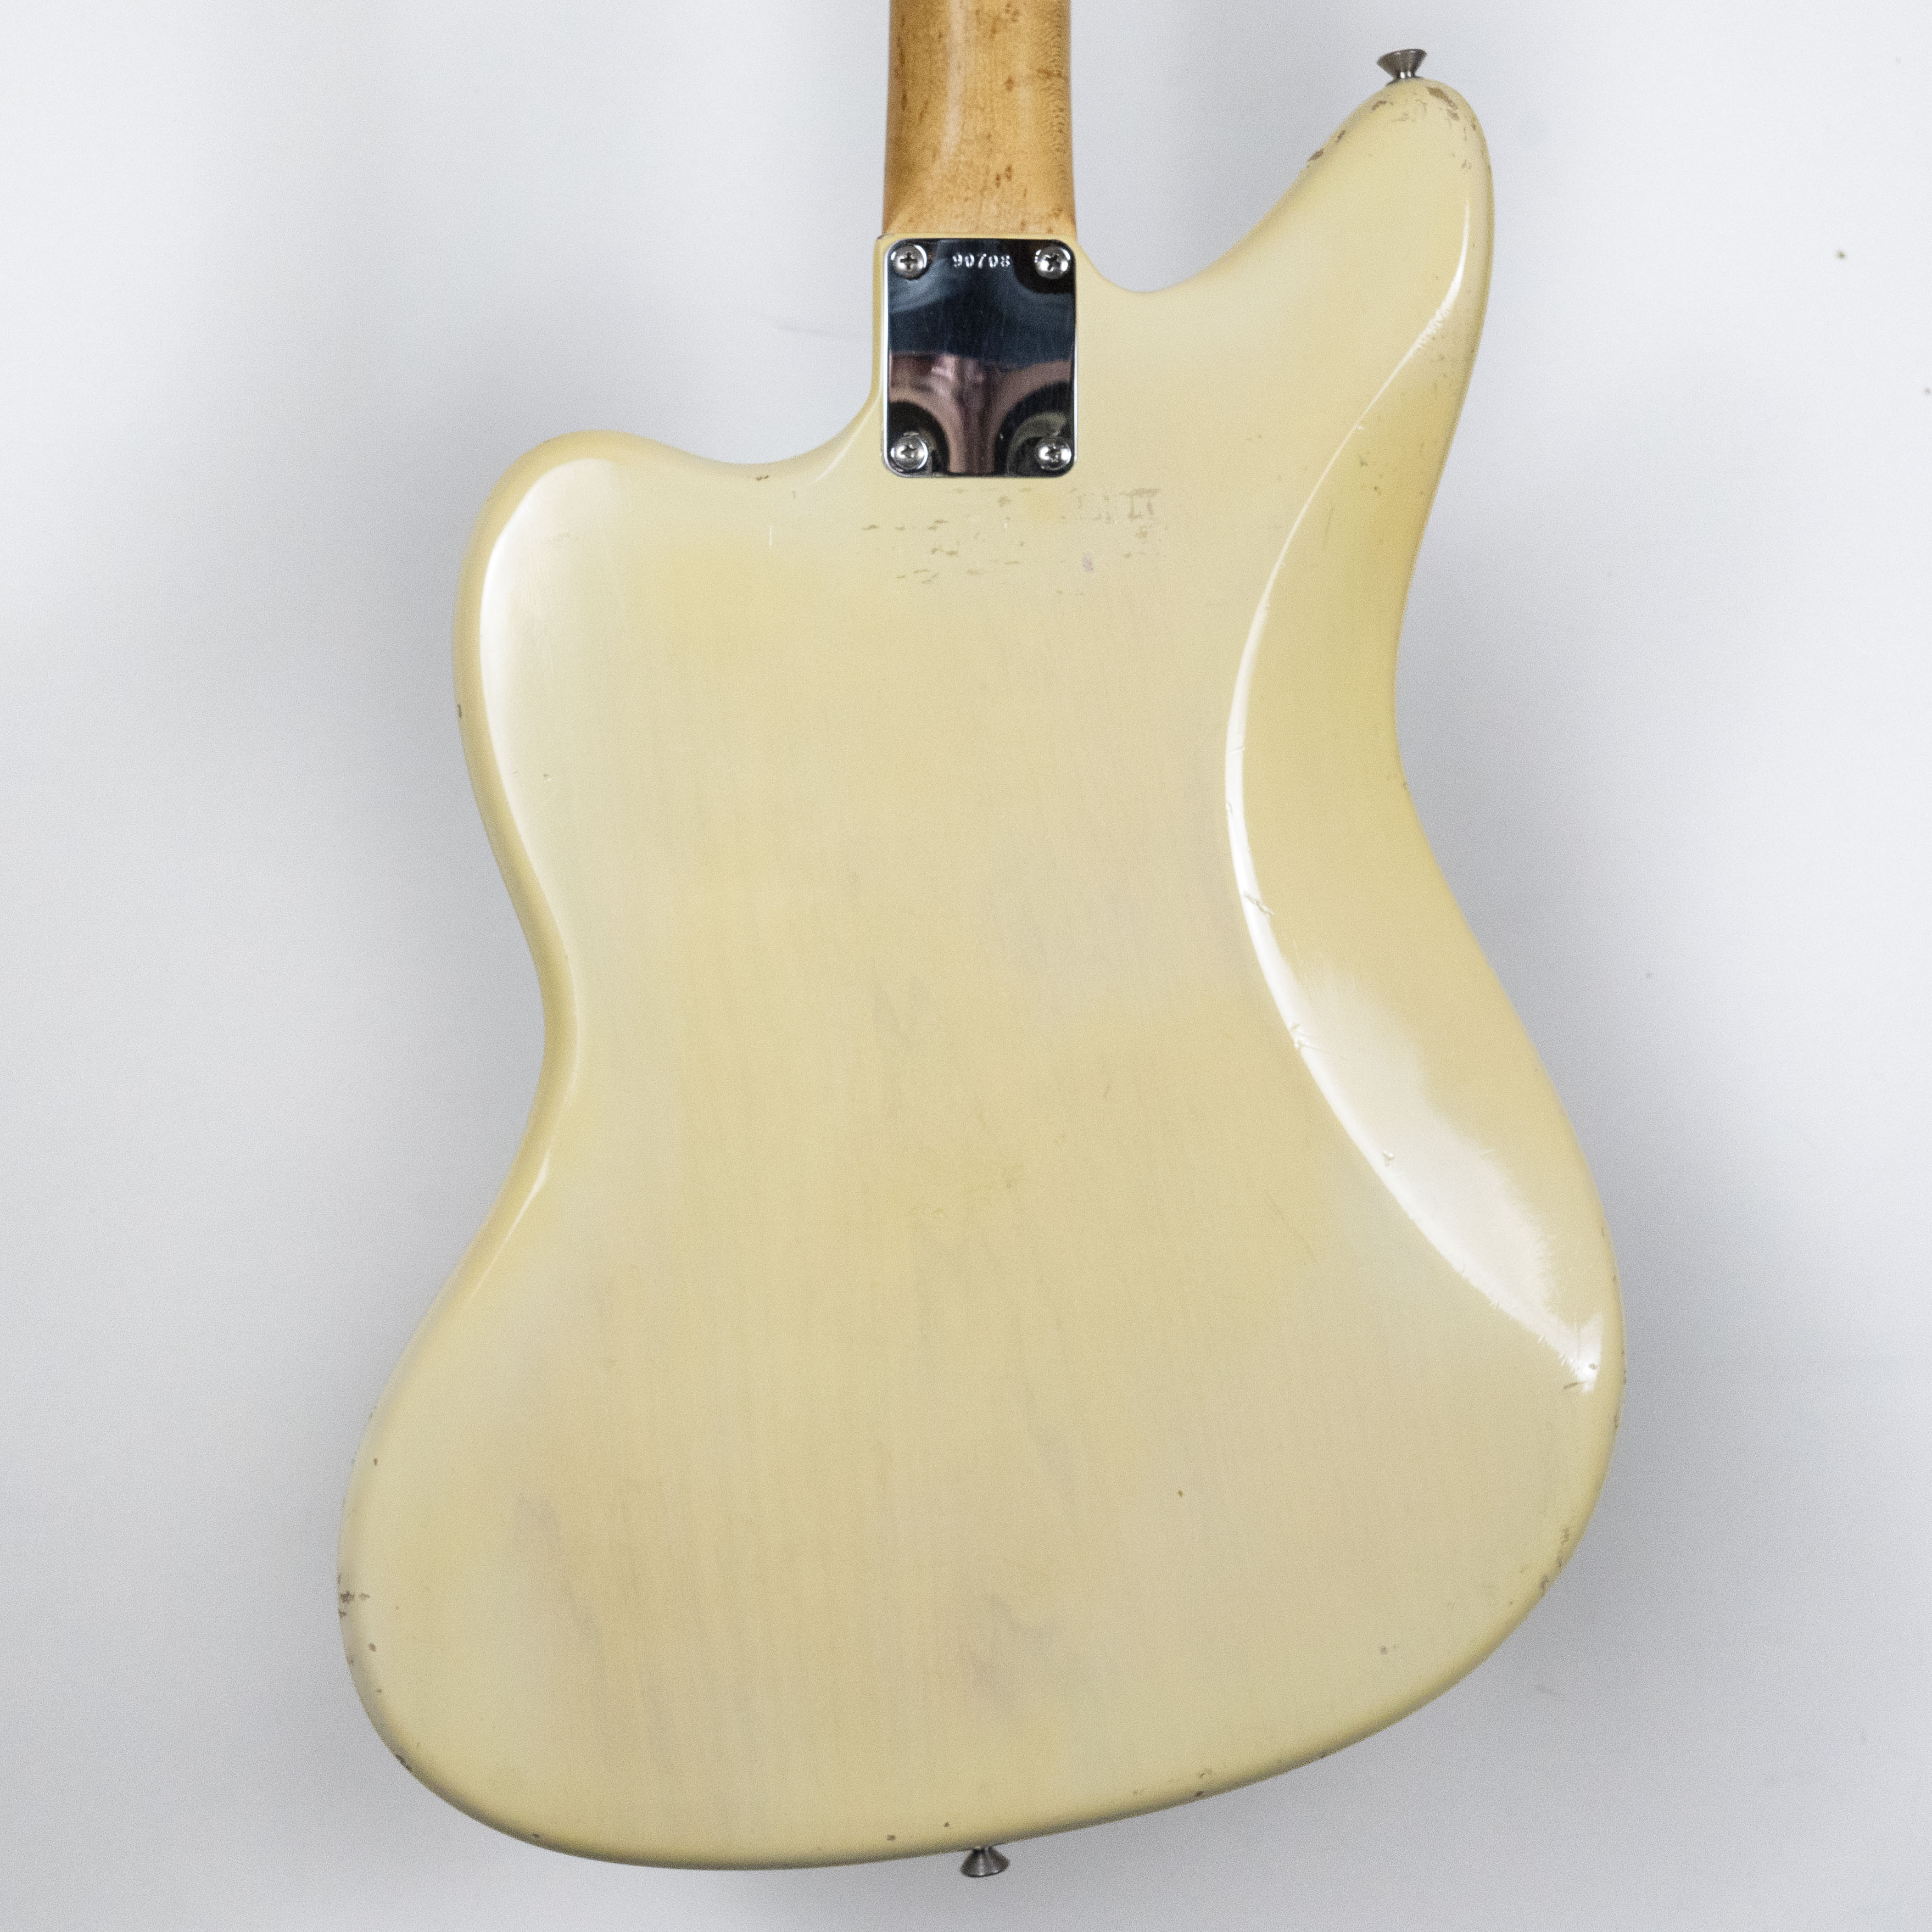 Fender 1962 Jaguar, Blonde